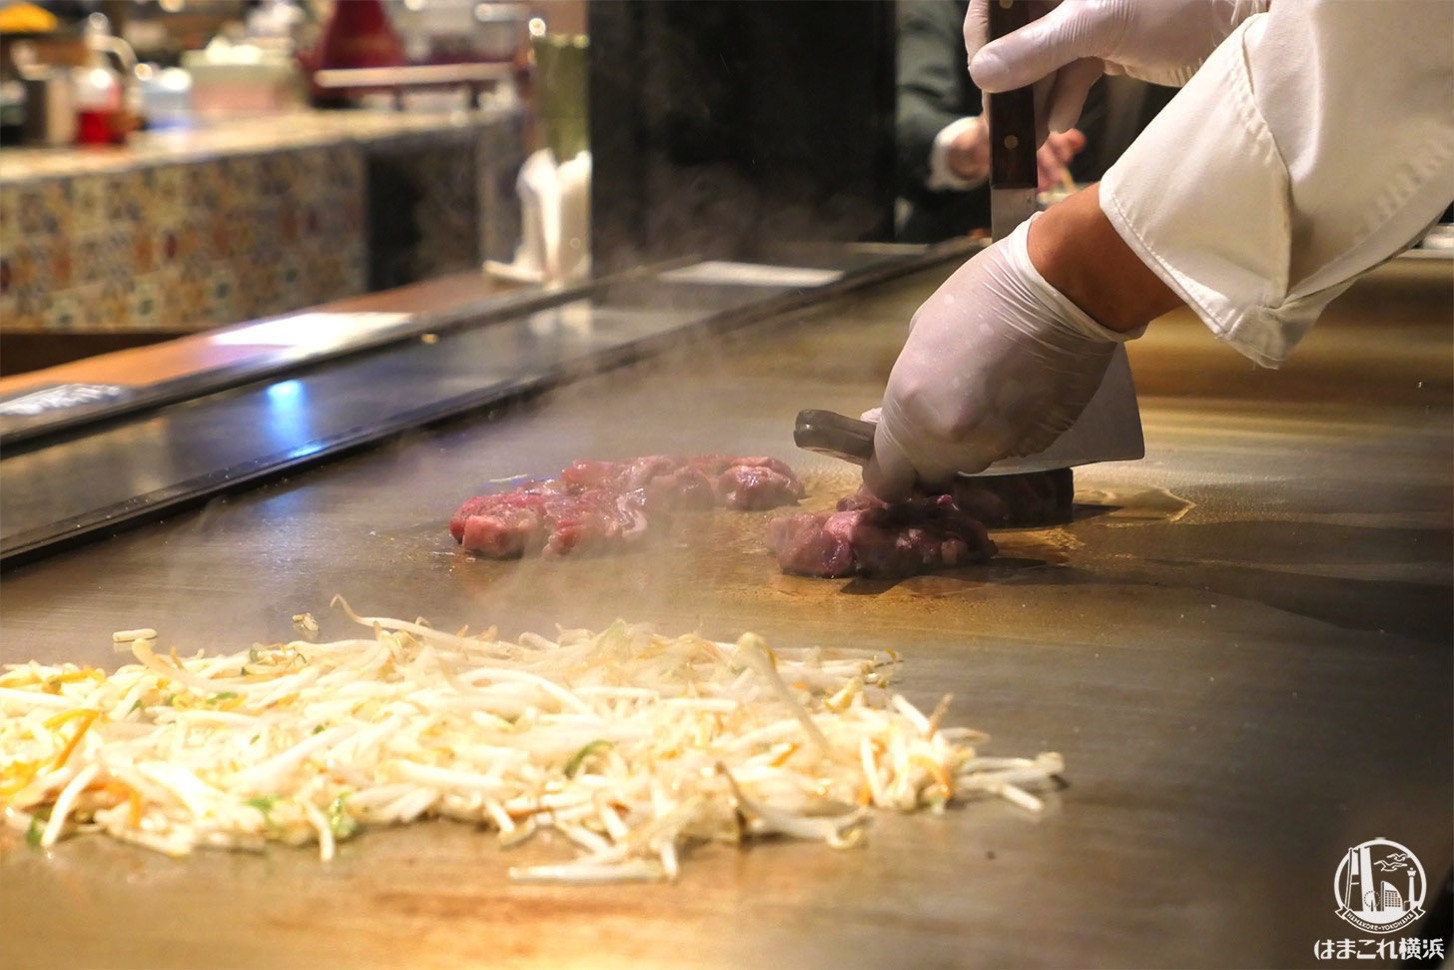 シァル横浜 鉄板焼き 寿々の助 のステーキが至福の旨さ 目の前で焼くライブ感も魅力 はまこれ横浜